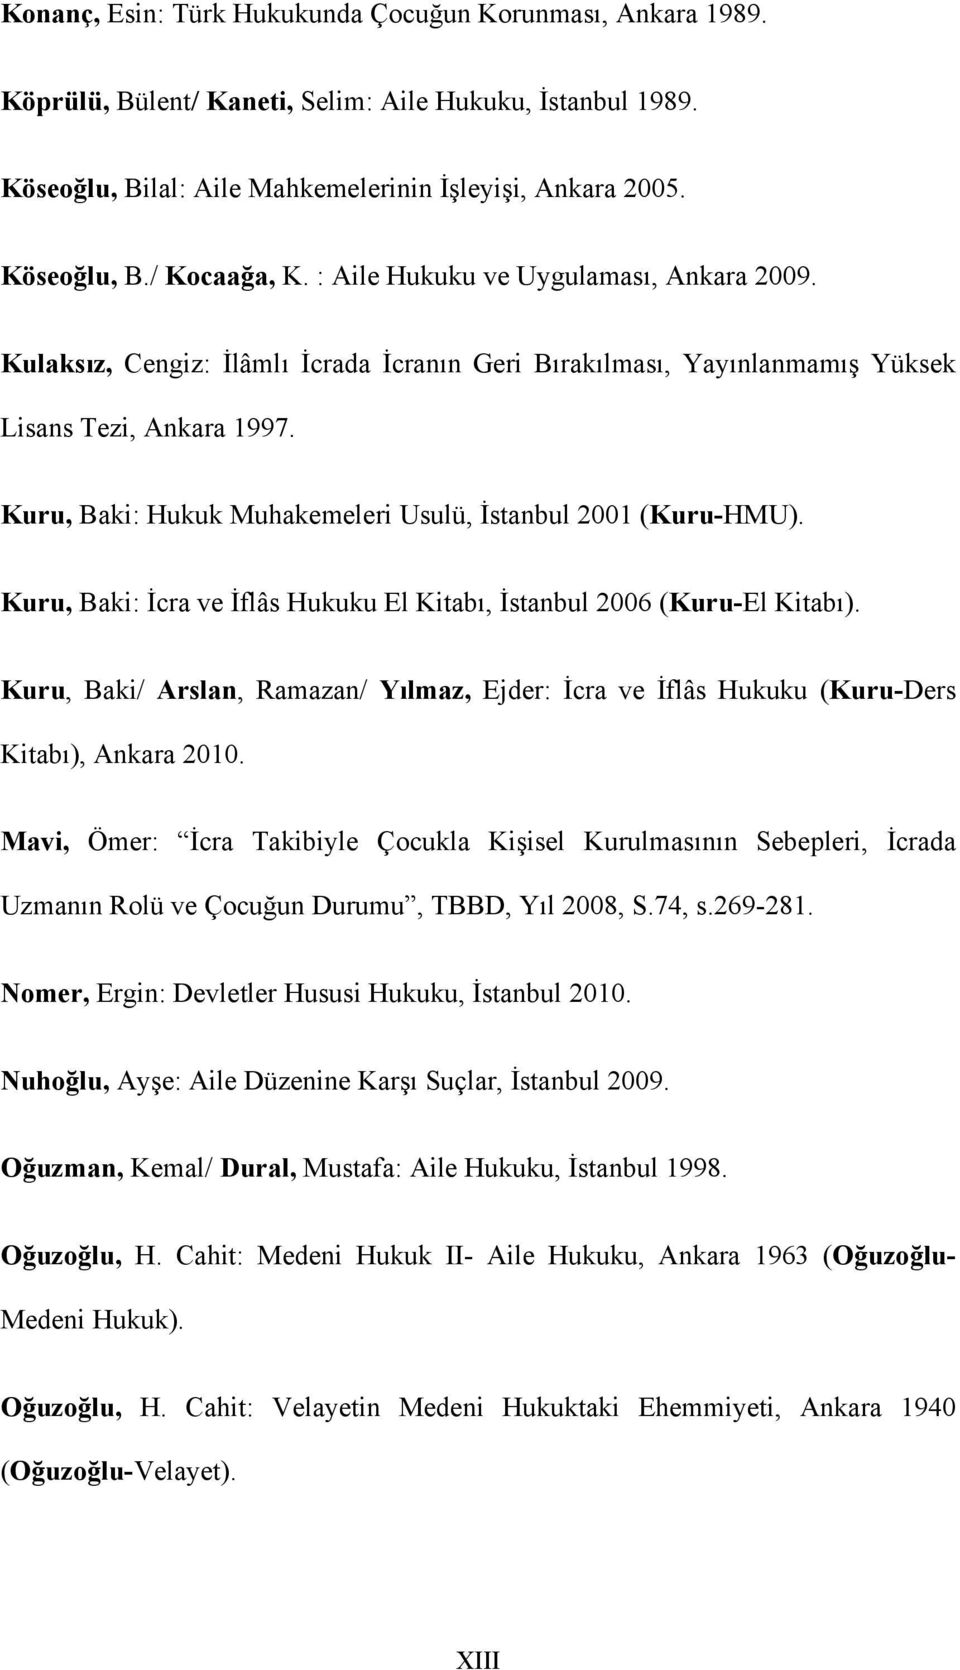 Kuru, Baki: Hukuk Muhakemeleri Usulü, İstanbul 2001 (Kuru-HMU). Kuru, Baki: İcra ve İflâs Hukuku El Kitabı, İstanbul 2006 (Kuru-El Kitabı).